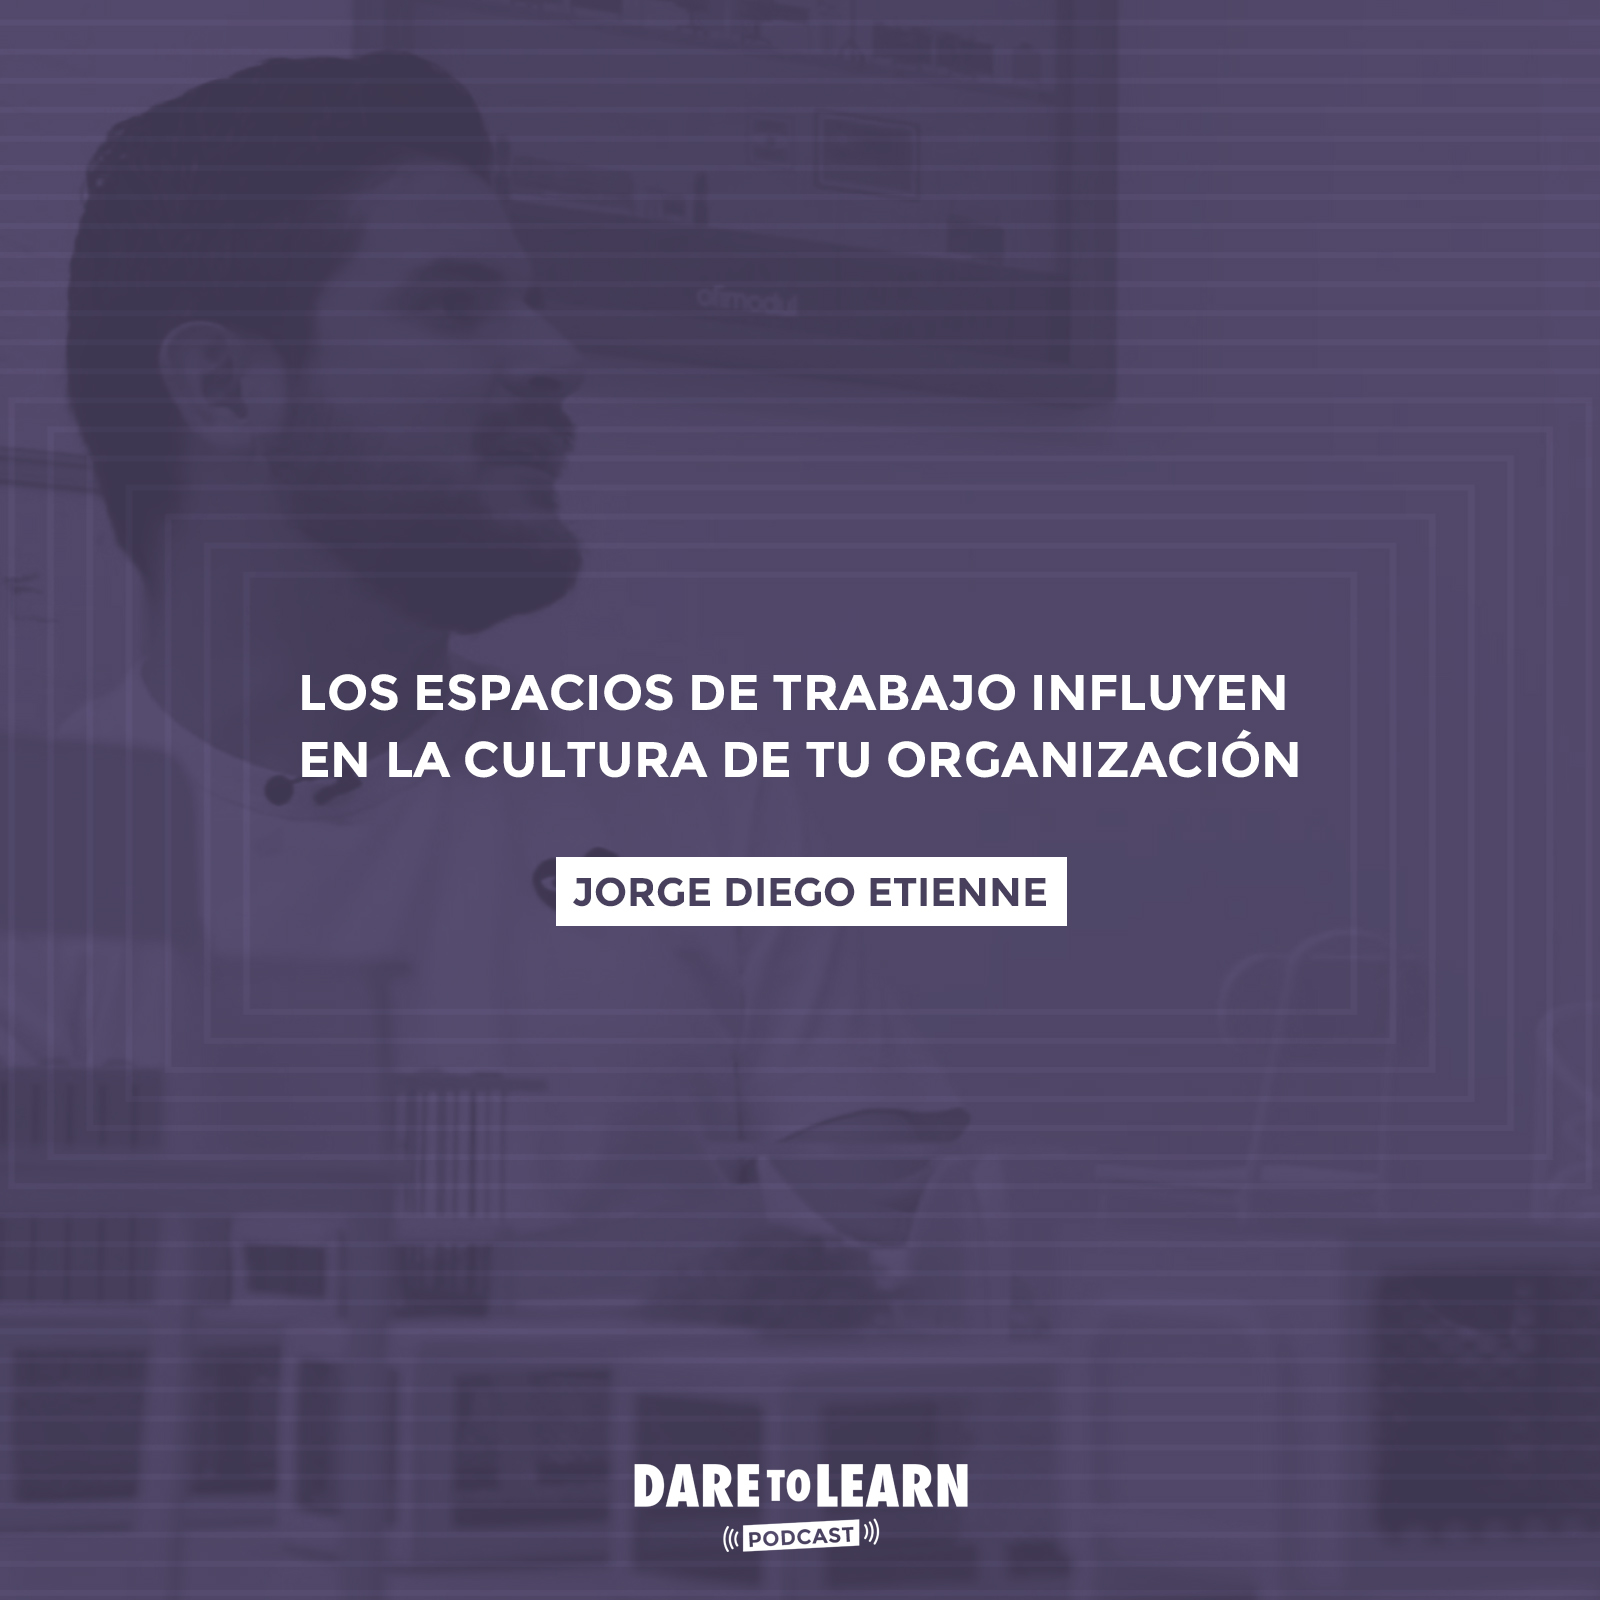 Jorge Diego Etienne: Los espacios de trabajo influyen en la Cultura de tu Organización